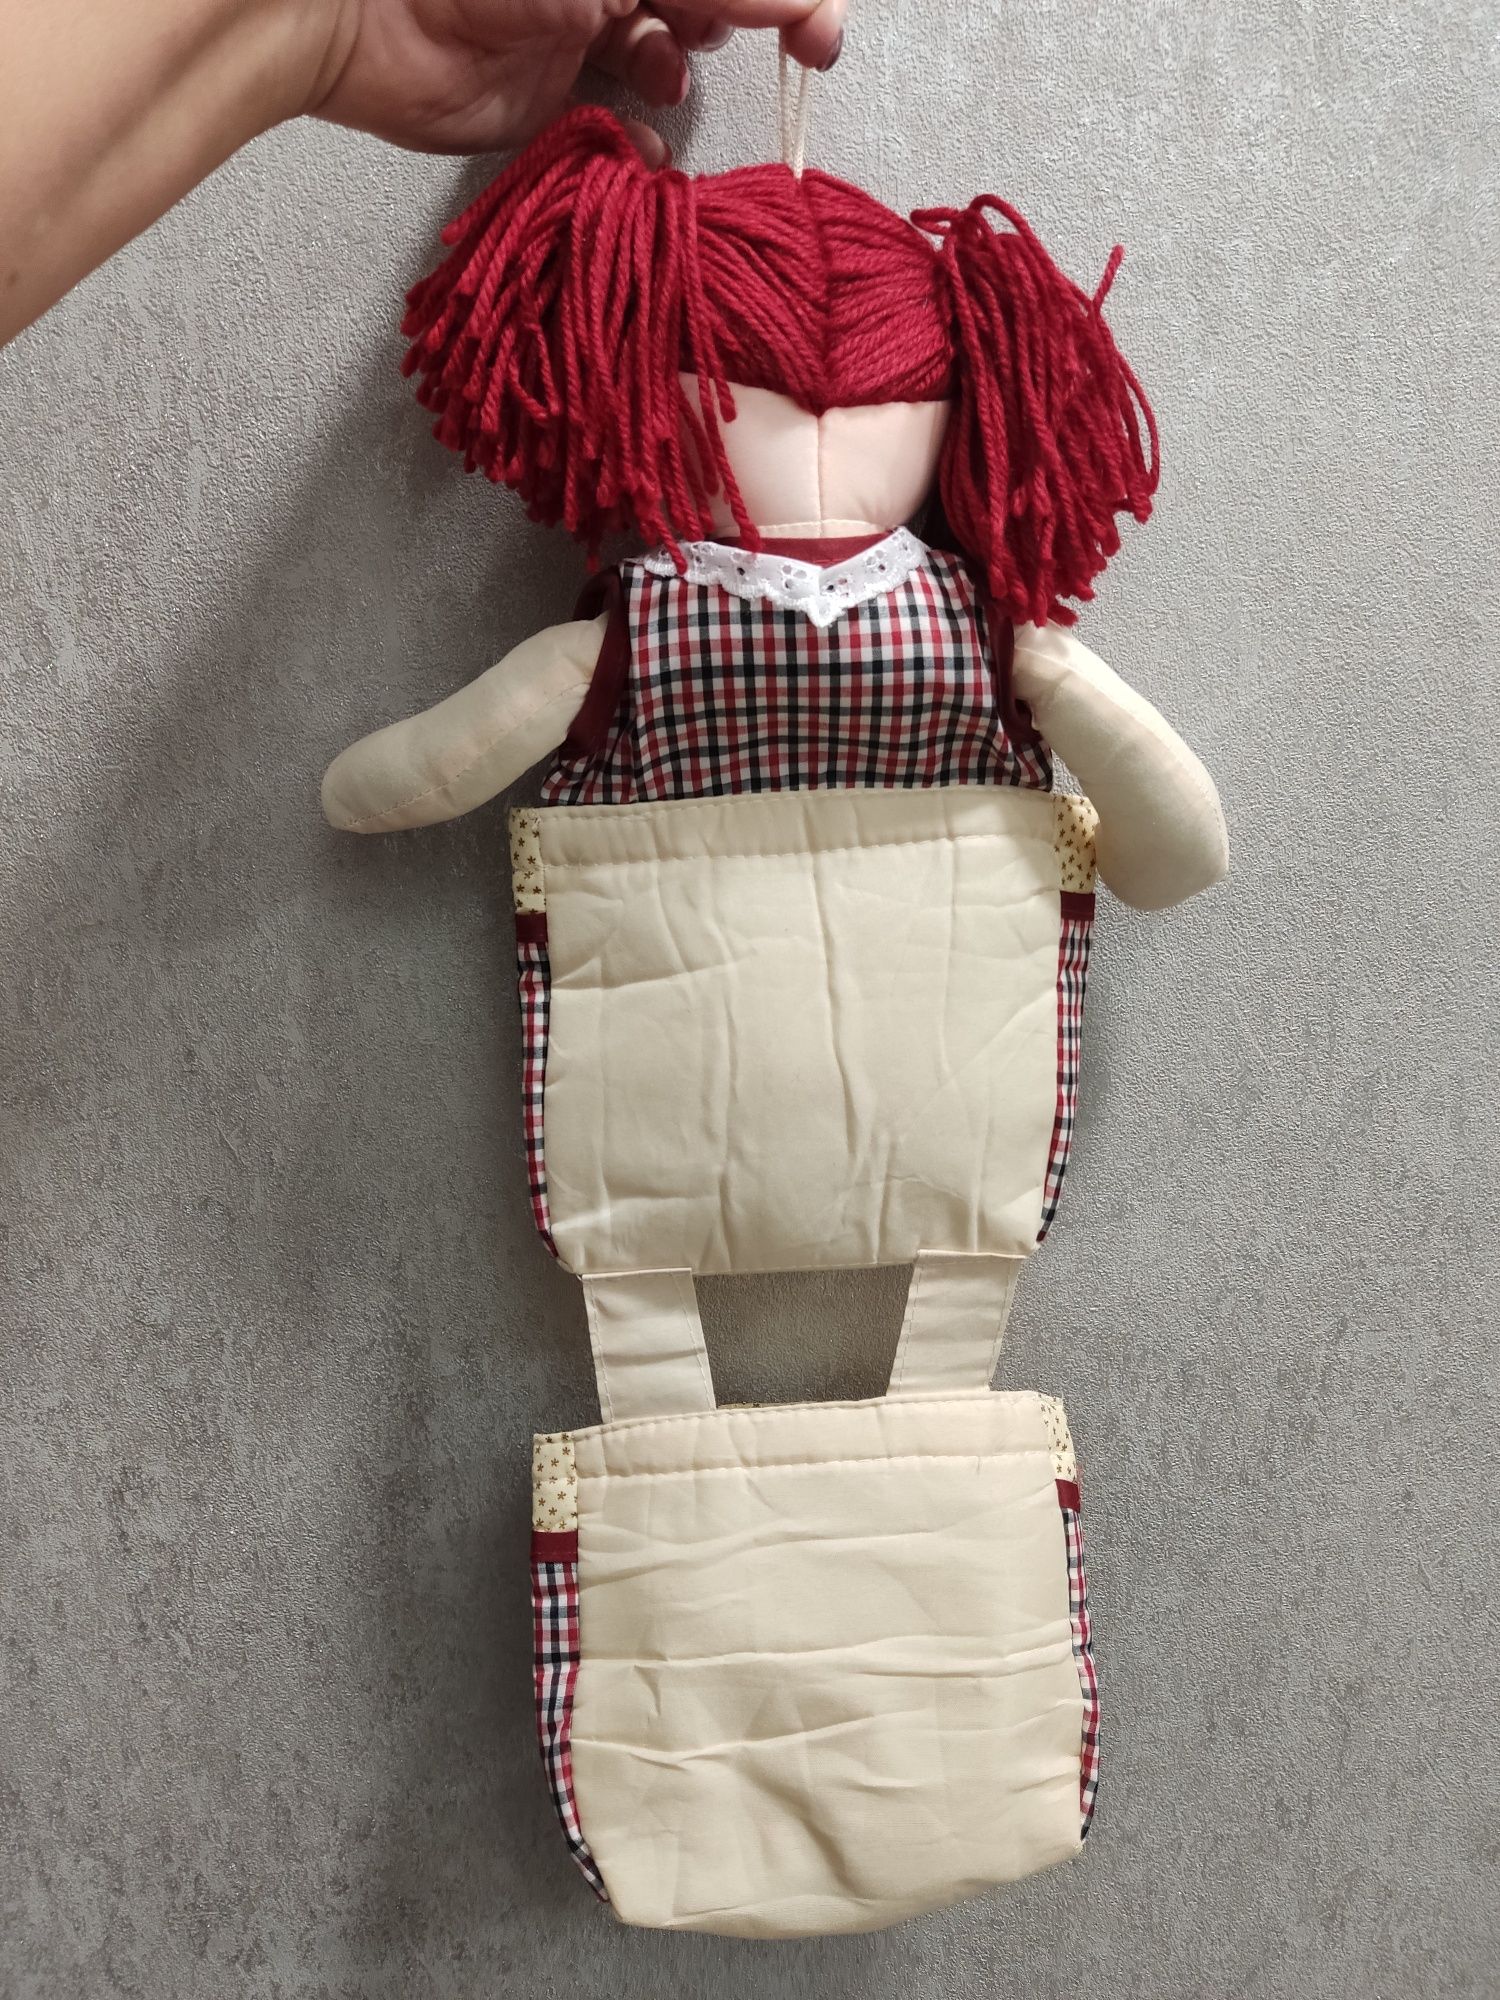 Лялька кишеня органайзер для дівчинки